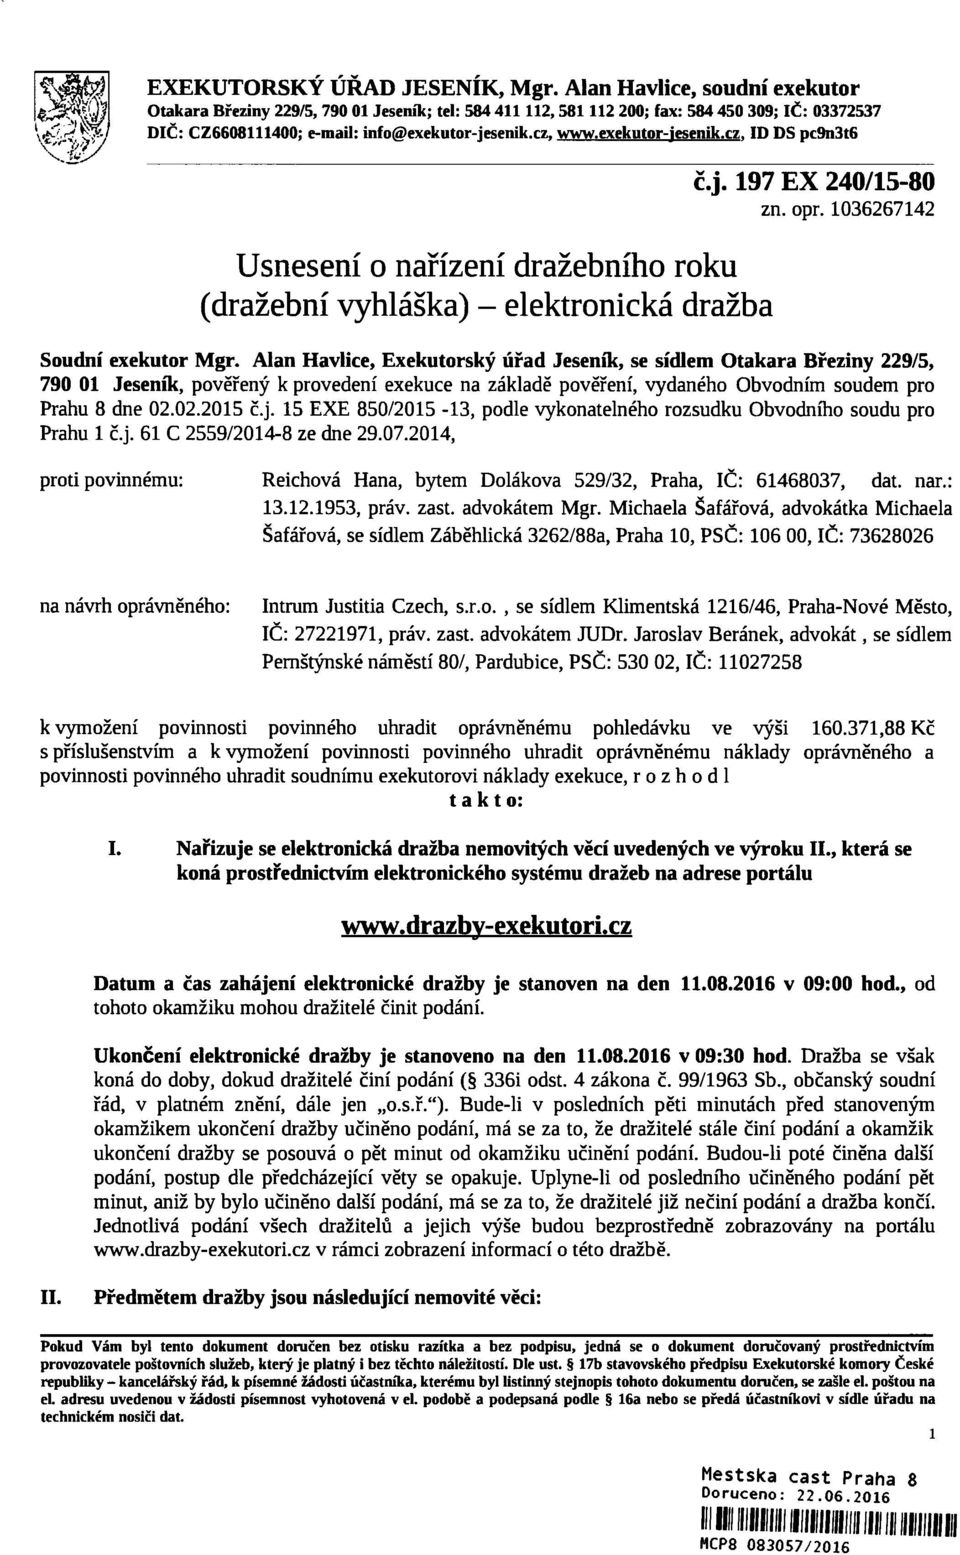 exekutor-iesenik.cz. ID DS pc9n3t6 Usnesení o nařízení dražebního roku (dražební vyhláška) - elektronická dražba č.j. 197 EX 240/15-80 zn. opr. 1036267142 Soudní exekútor Mgr.